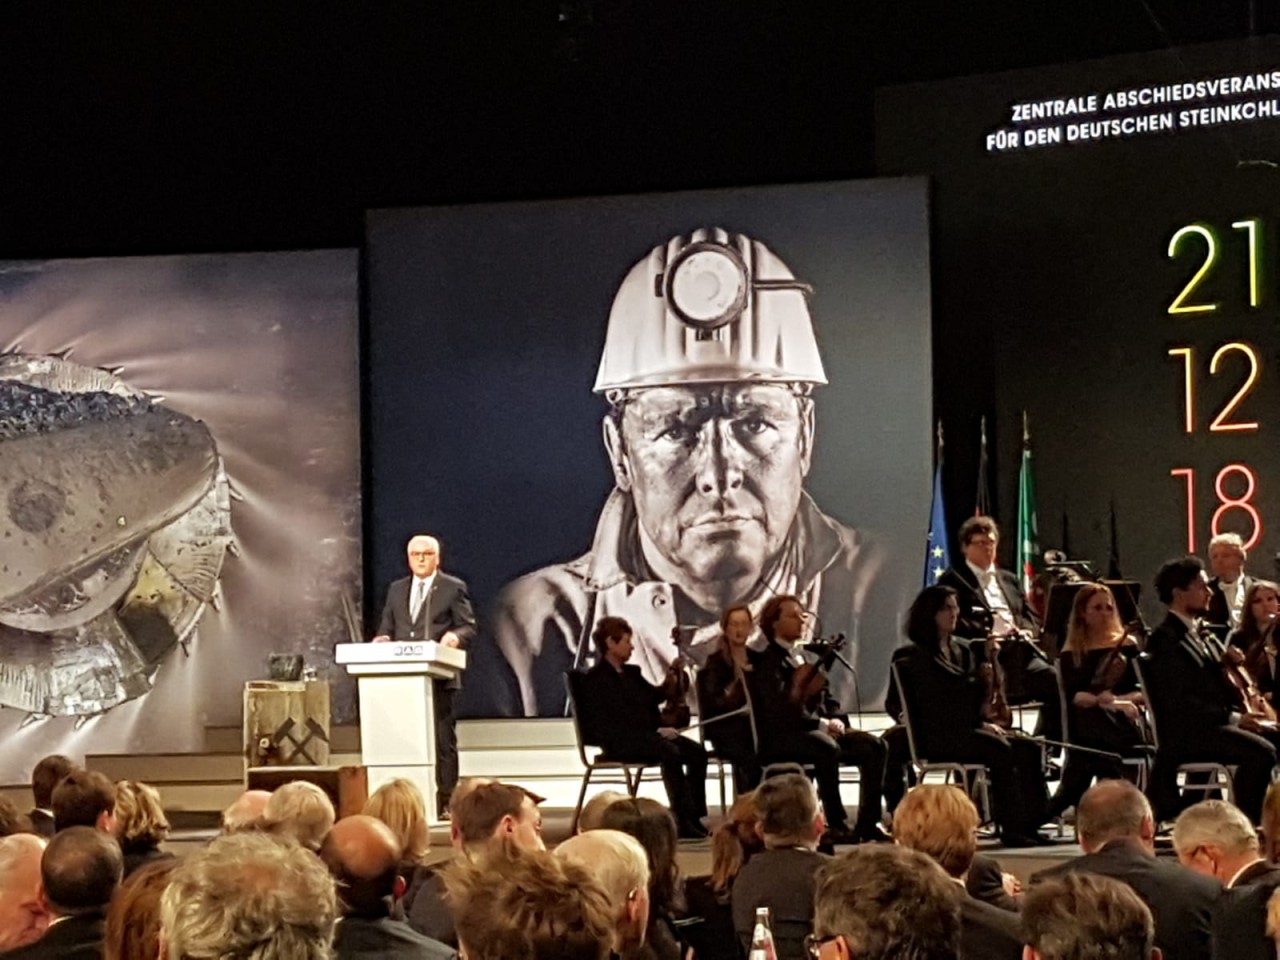 Bundespräsident Frank-Walter Steinmeier bei seiner Rede auf Prosper Haniel.